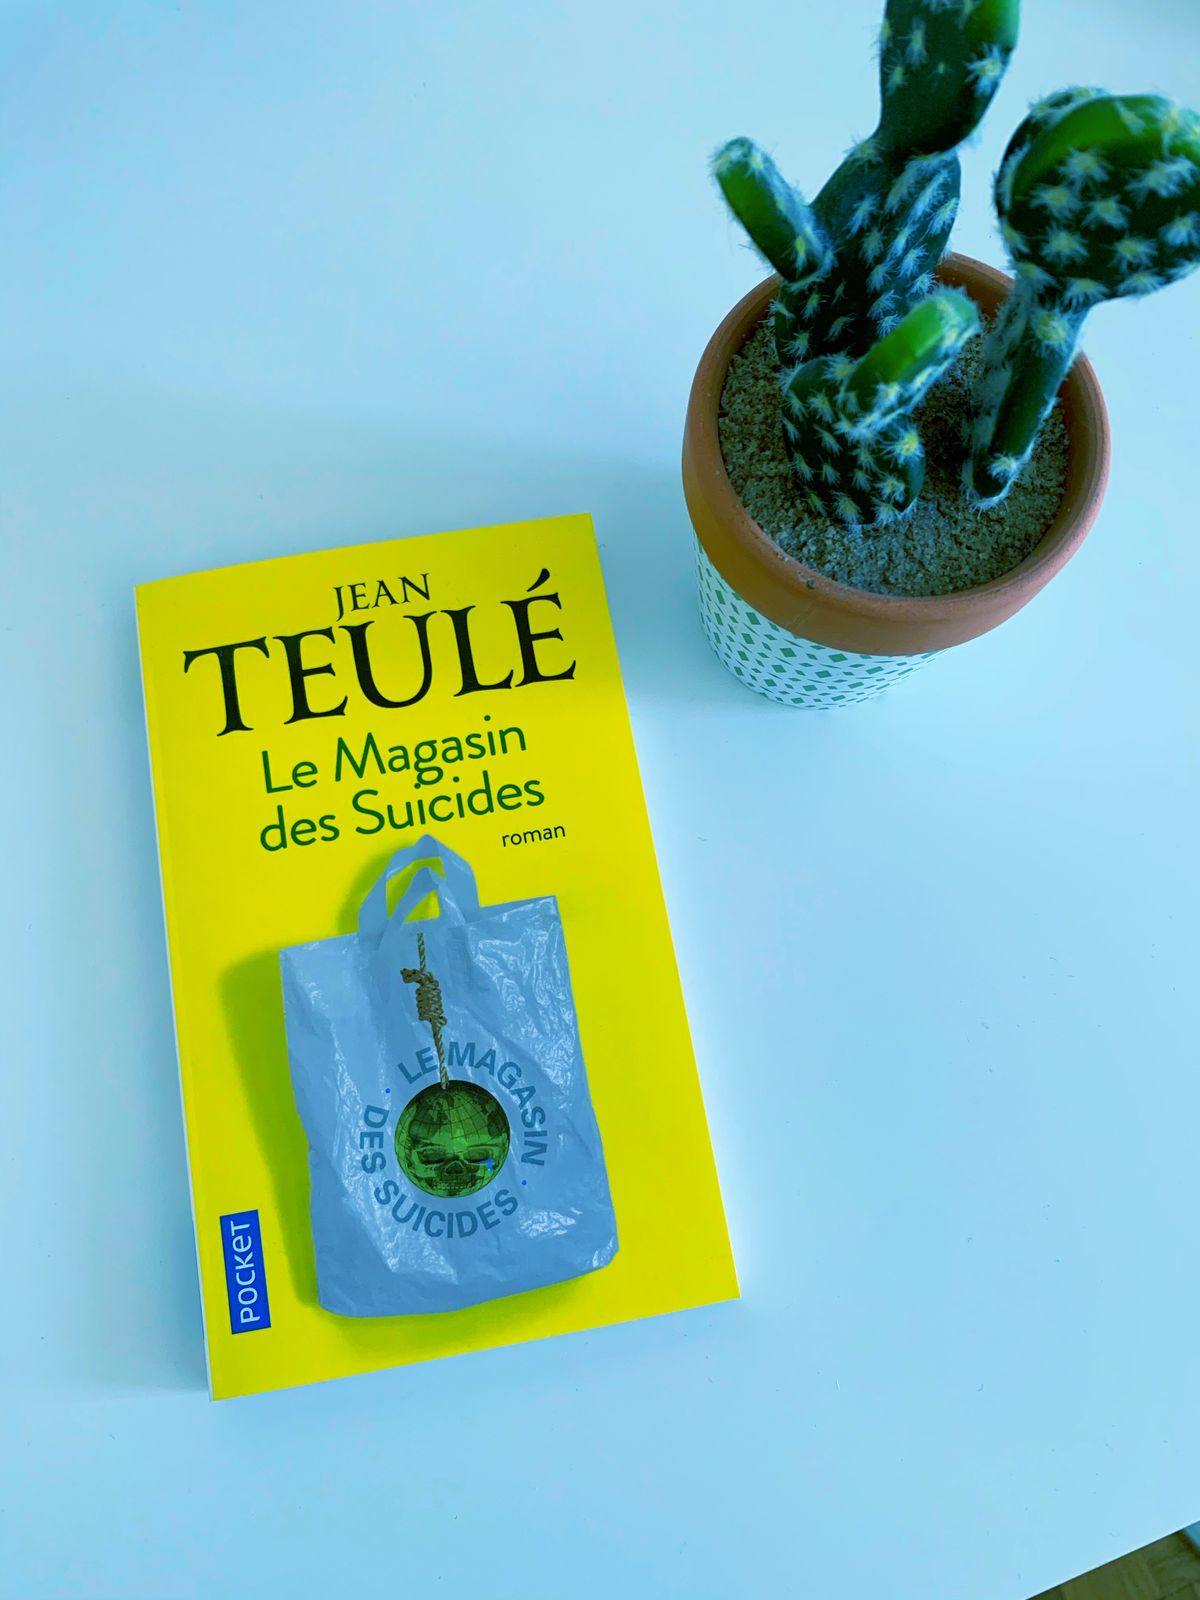 Le Magasin des Suicides – Jean Teulé (2008)